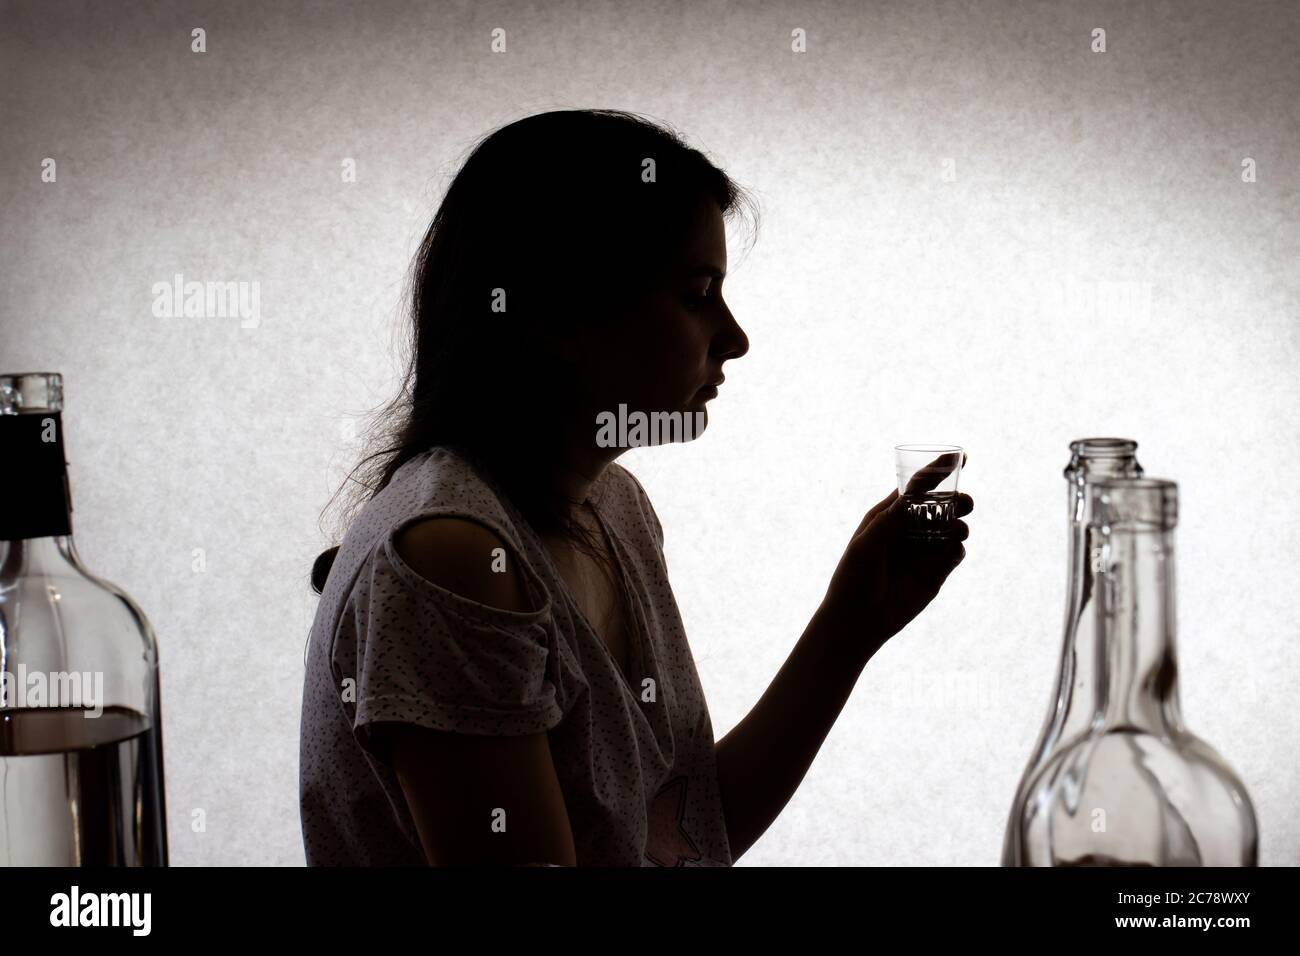 La femme tient un verre avec de l'alcool fort. Alcoolisme féminin, dépendance à l'alcool, délire tremens. Photo de silhouette. Banque D'Images